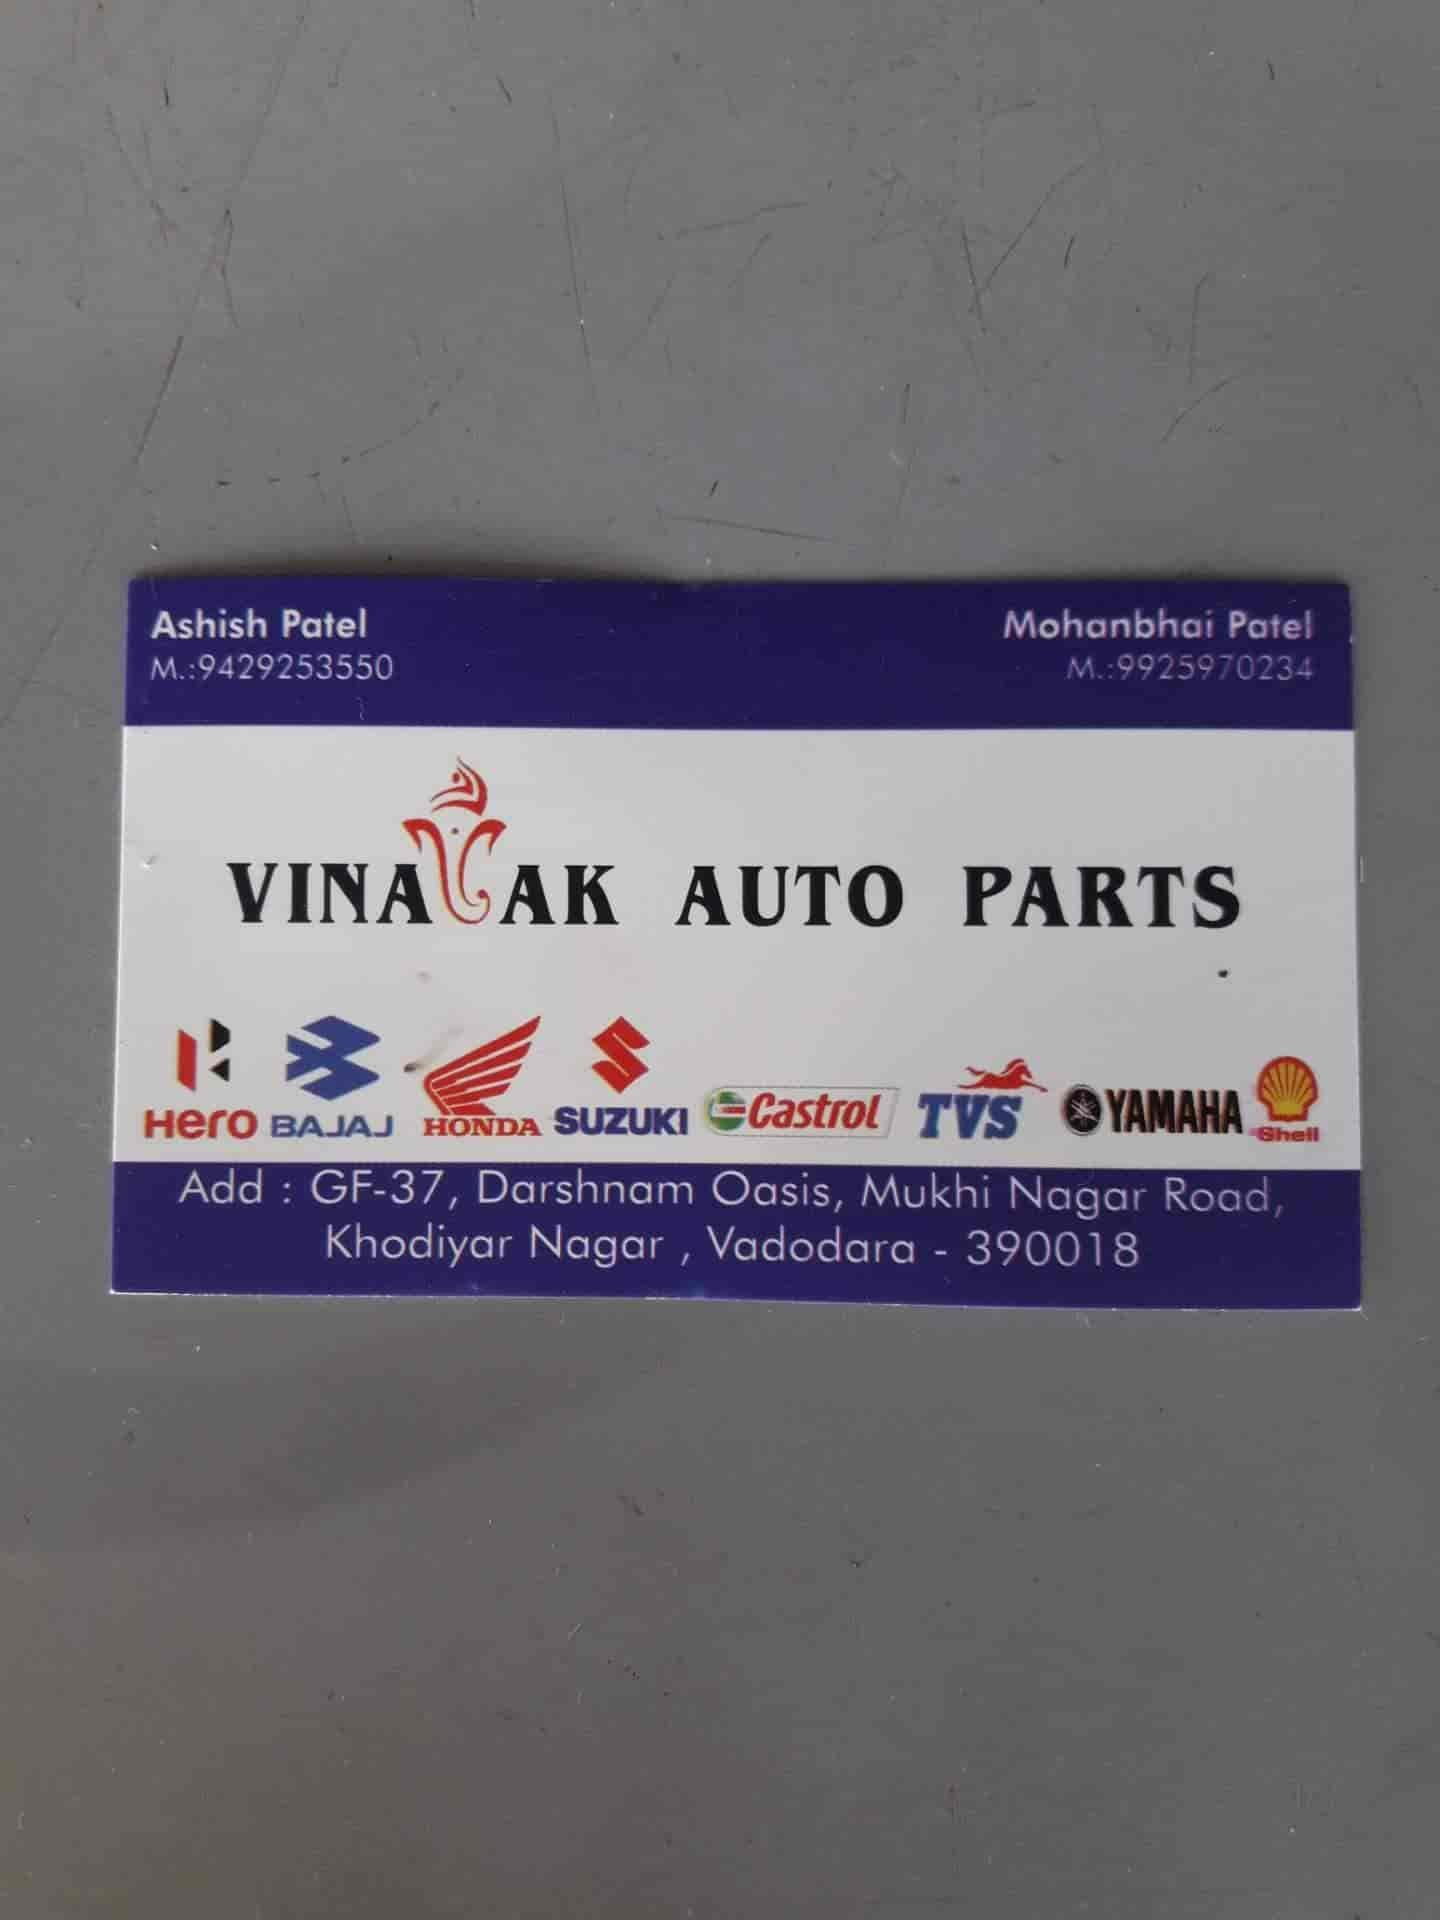 Vinayak Auto Parts